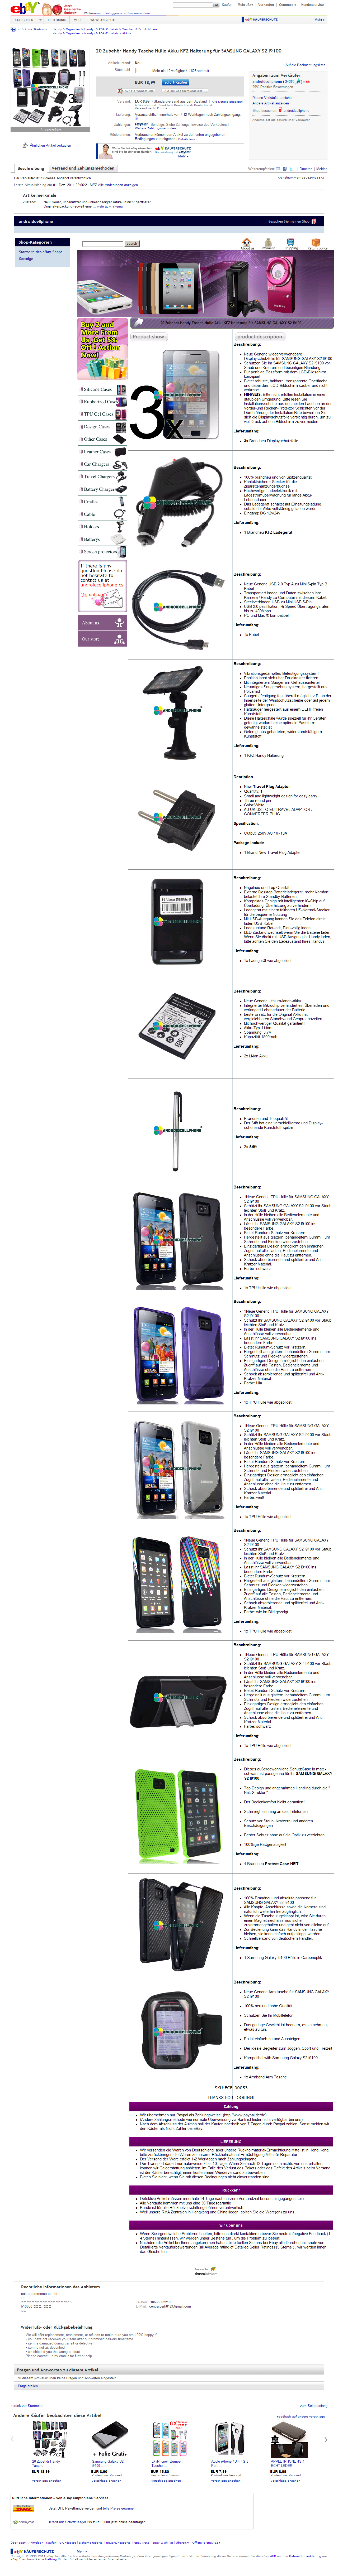 Post aus Fernost – Zubehör für das Samsung Galaxy S2 zum Spottpreis